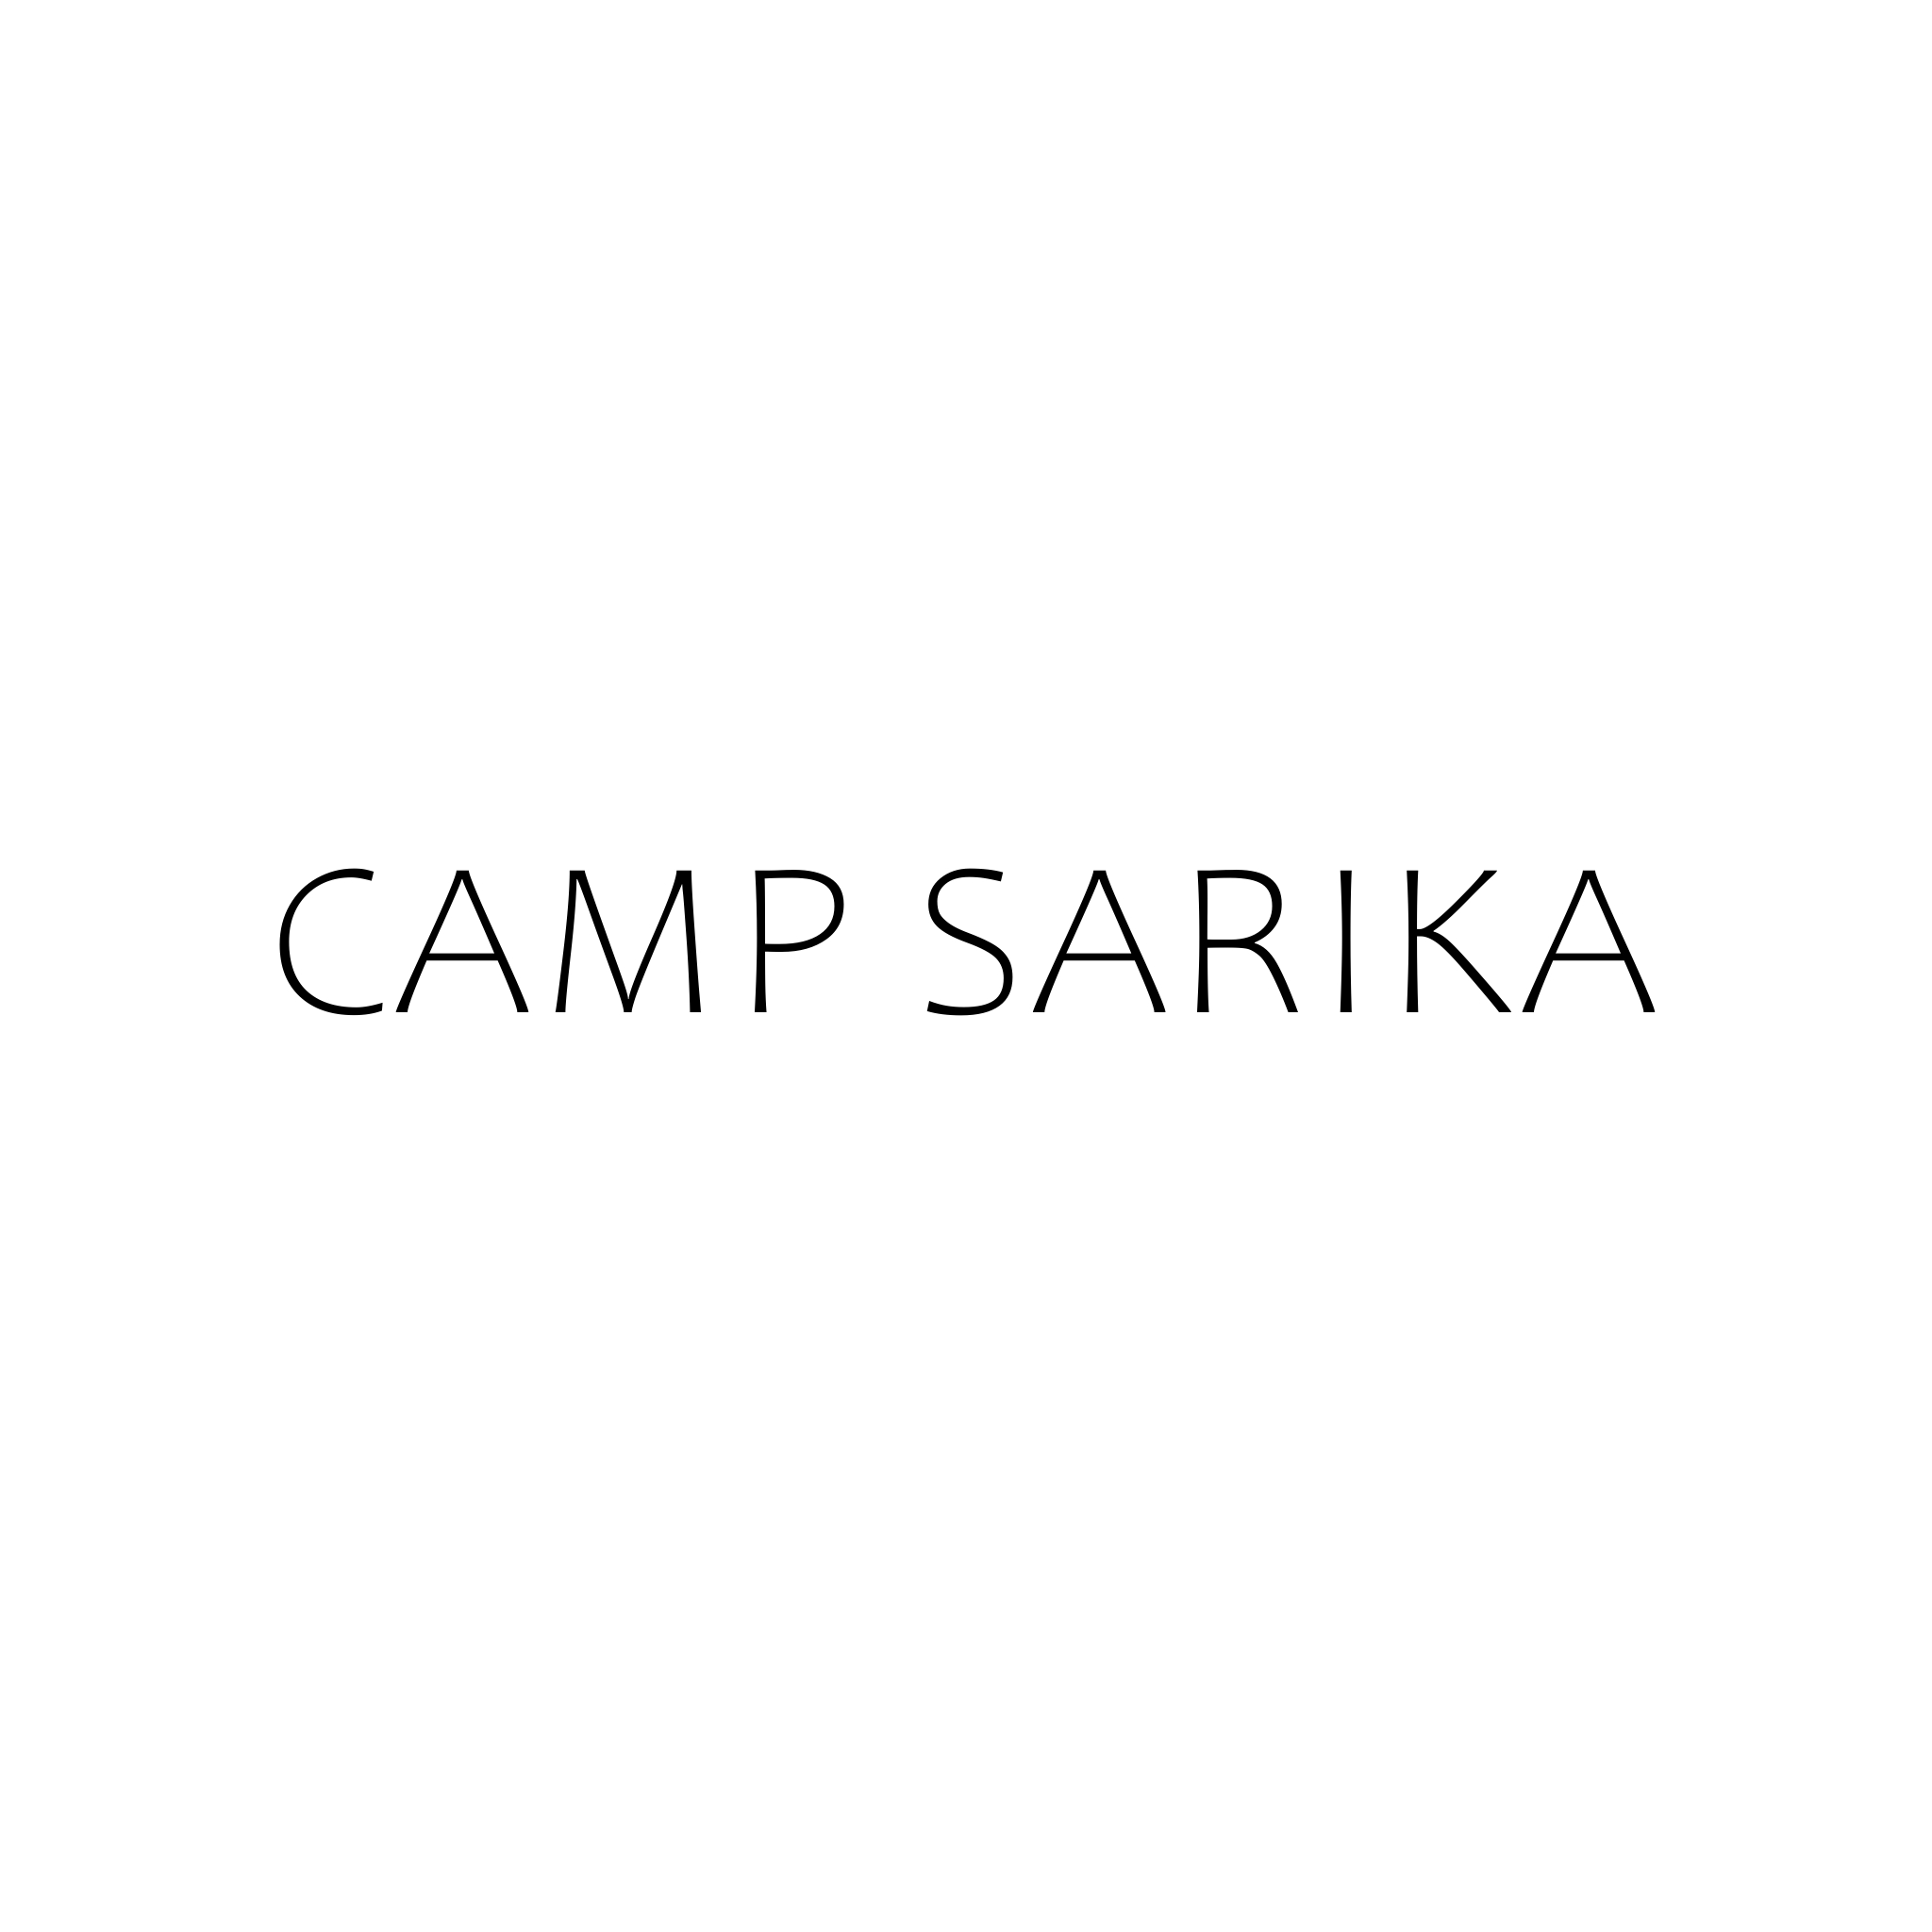 Camp Sarika